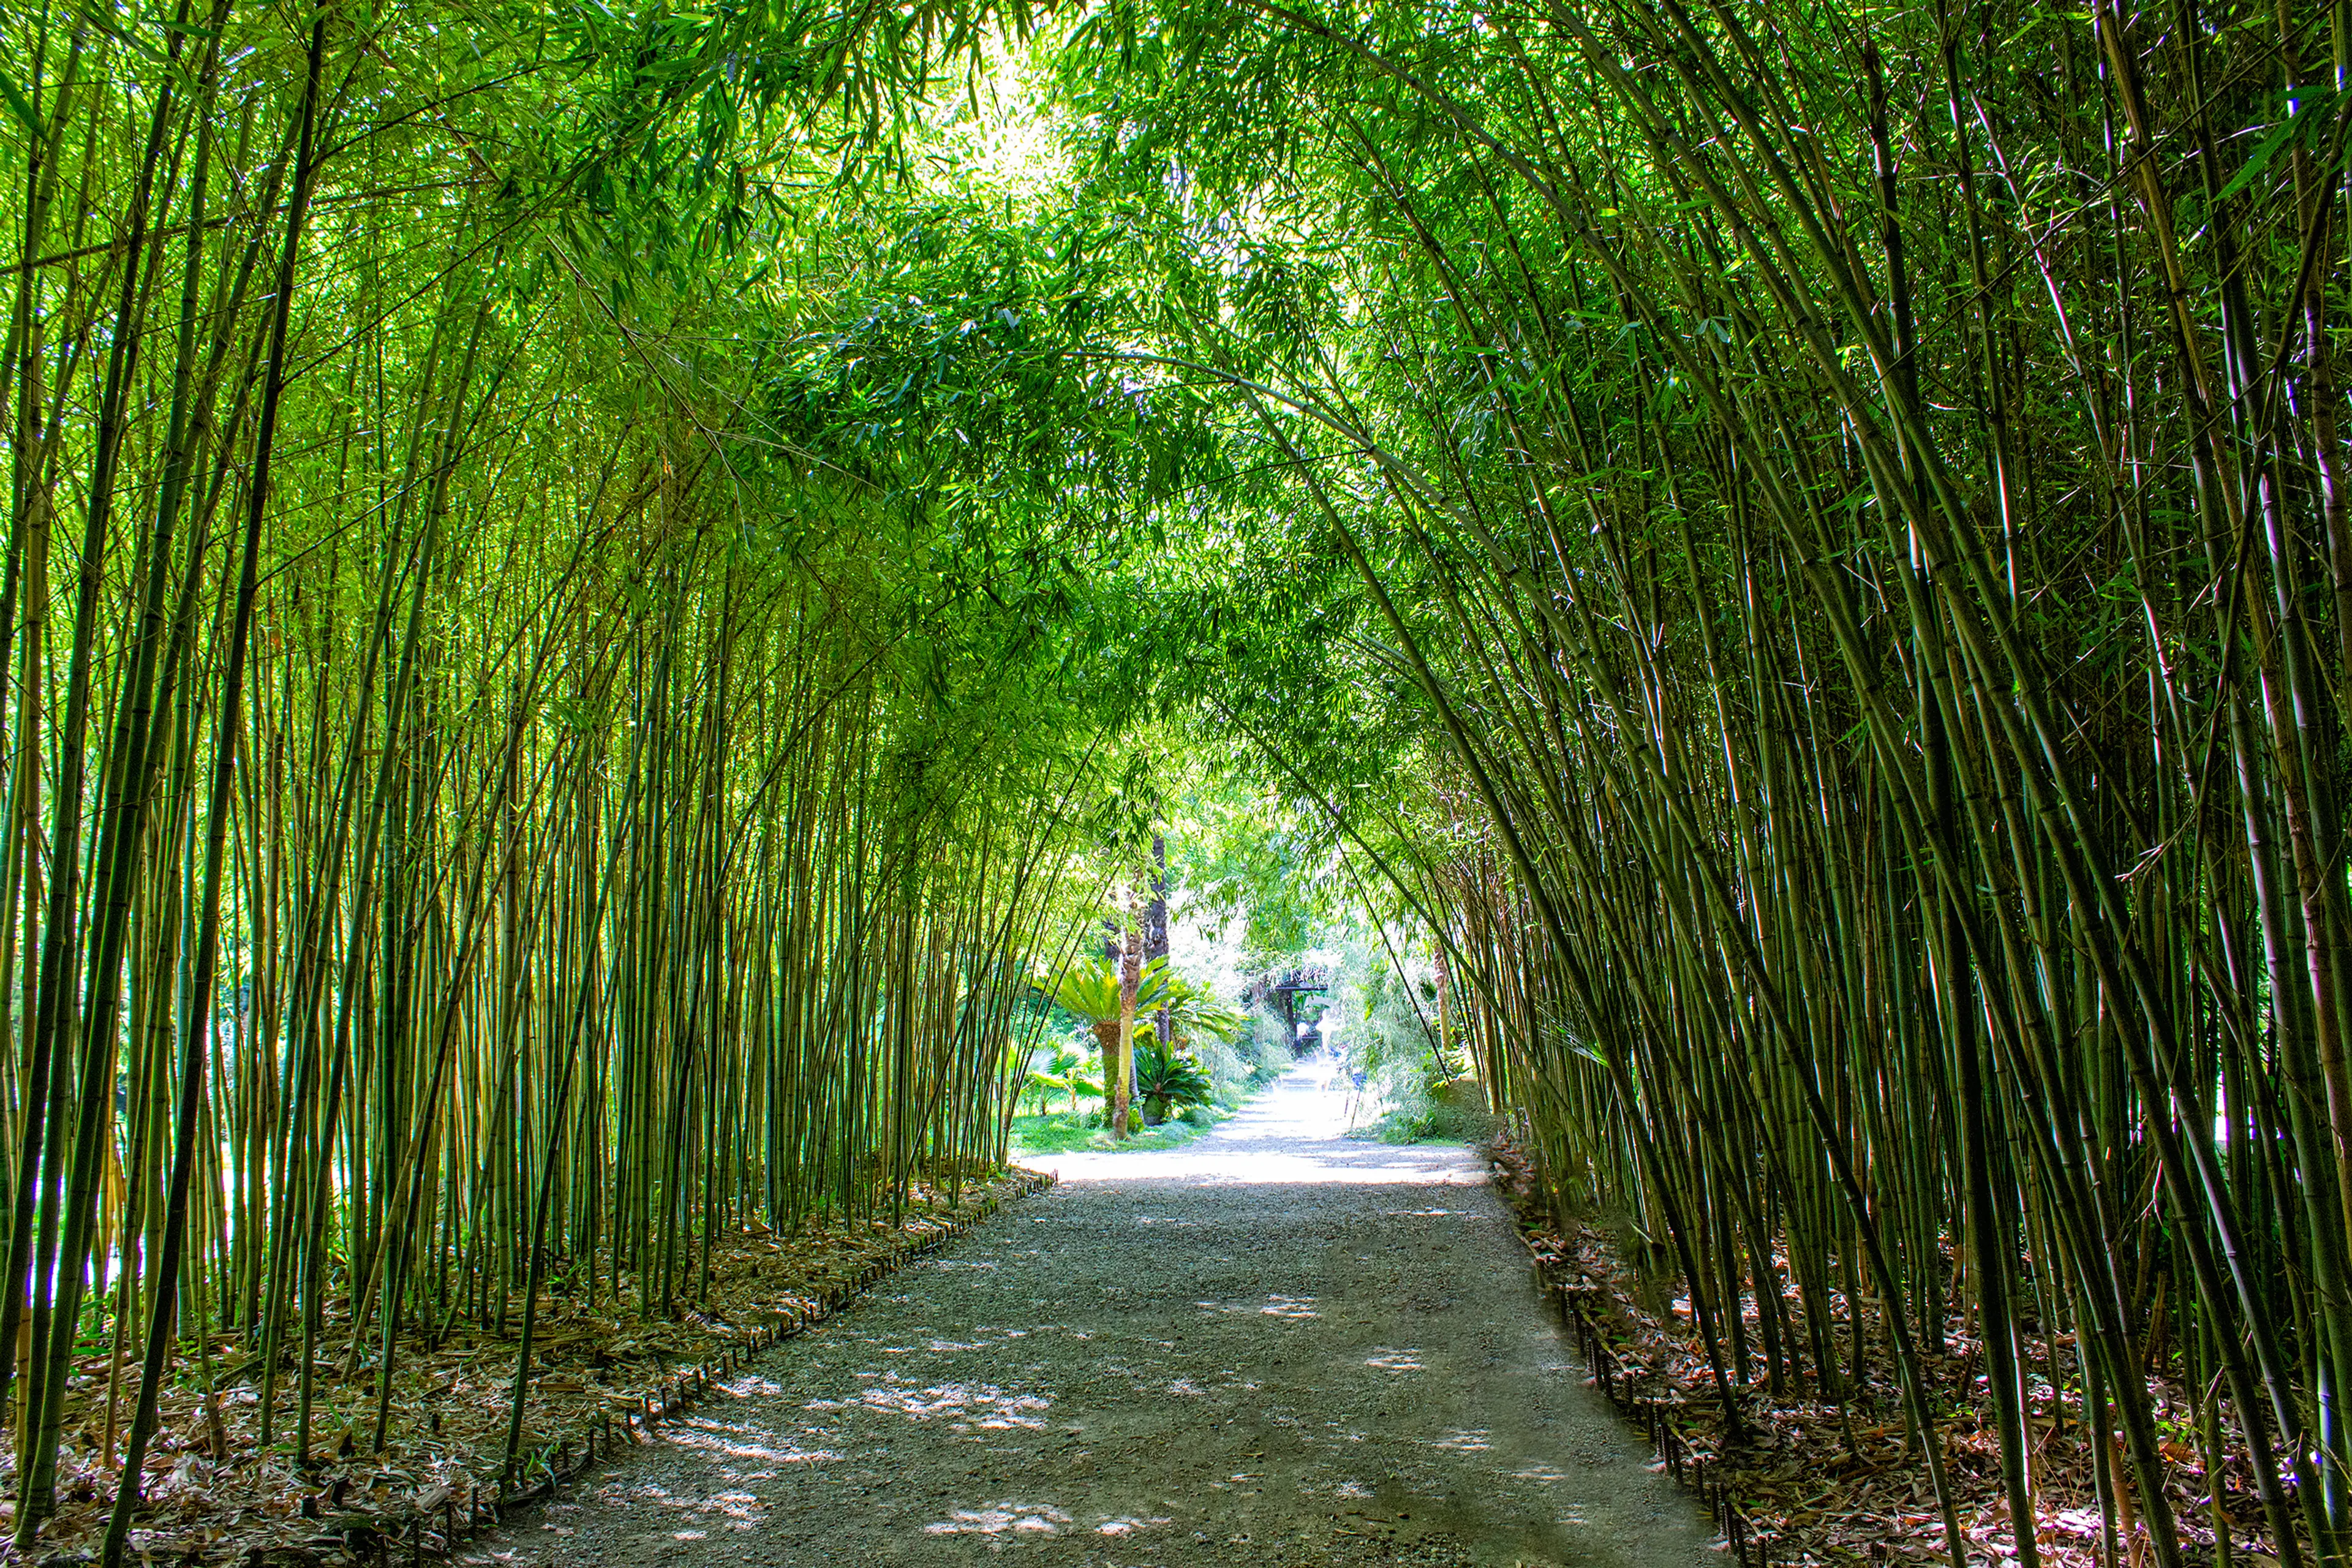 Bamboo avenue